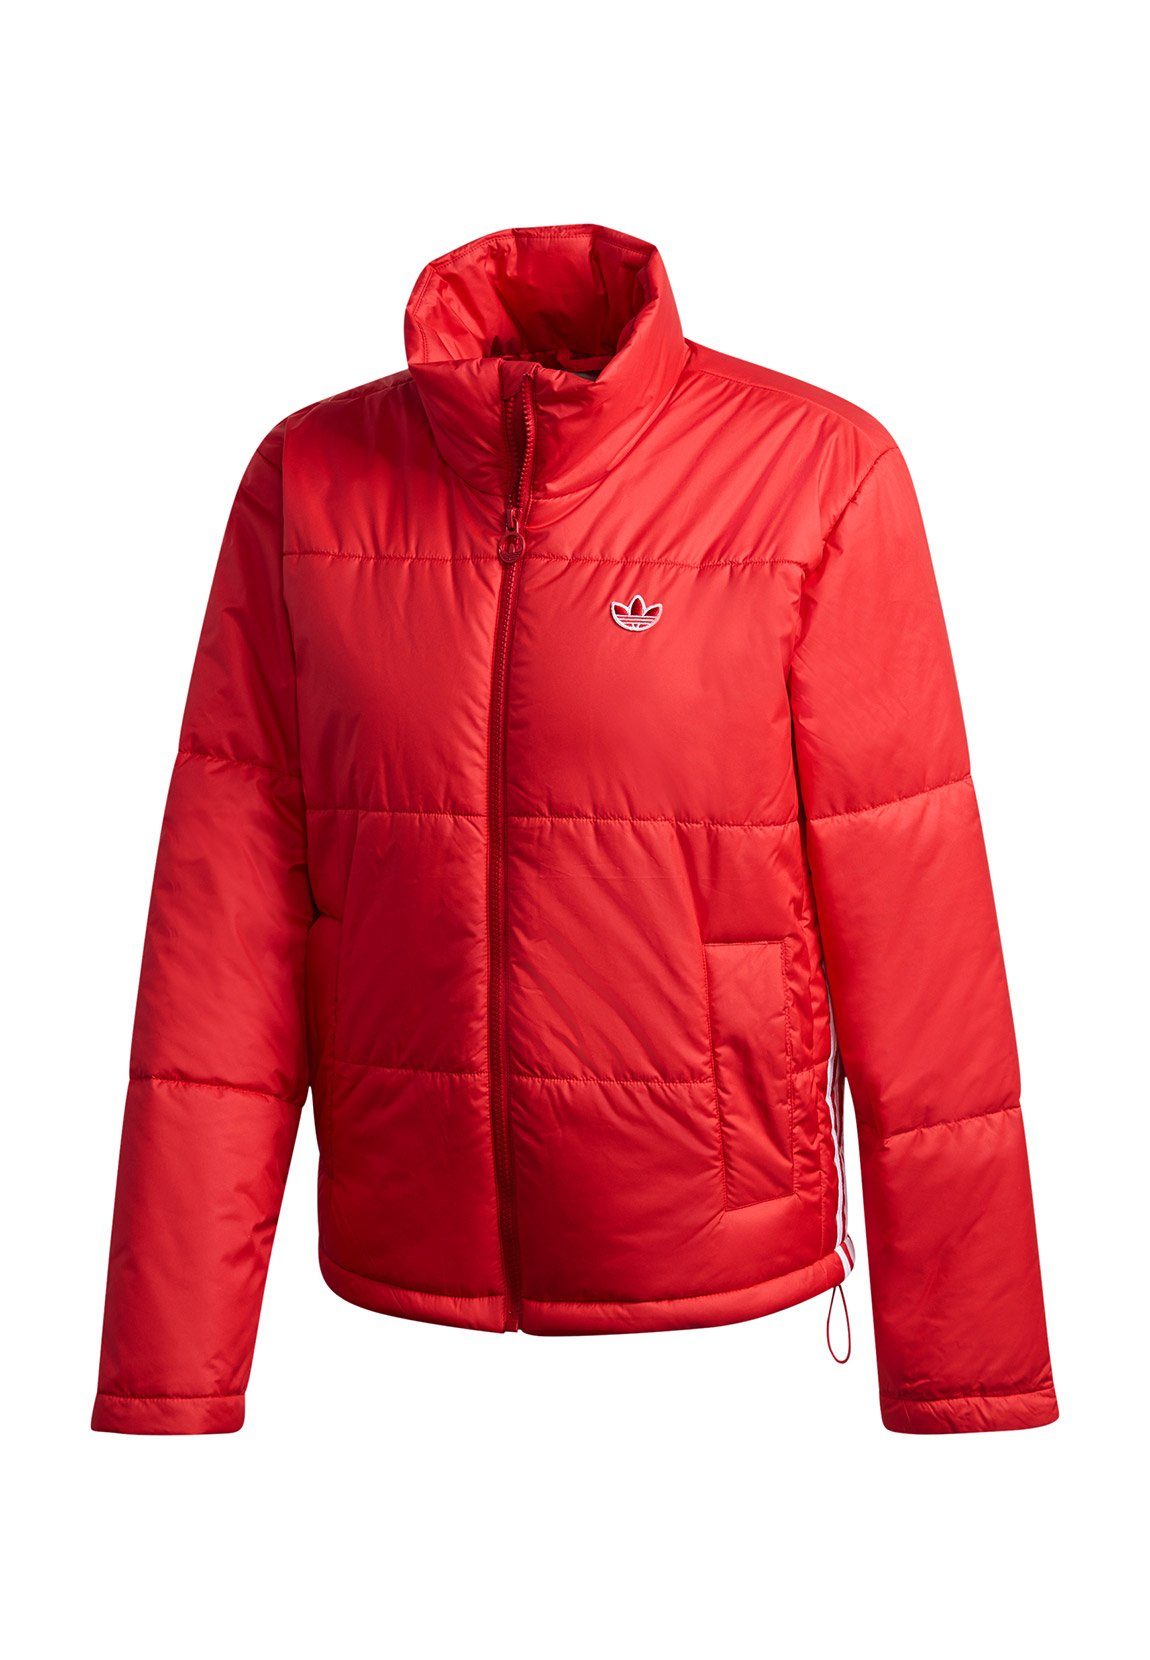 adidas Originals Steppjacke »Adidas Originals Jacke Damen SHORT PUFFER  GK8556 Rot« online kaufen | OTTO